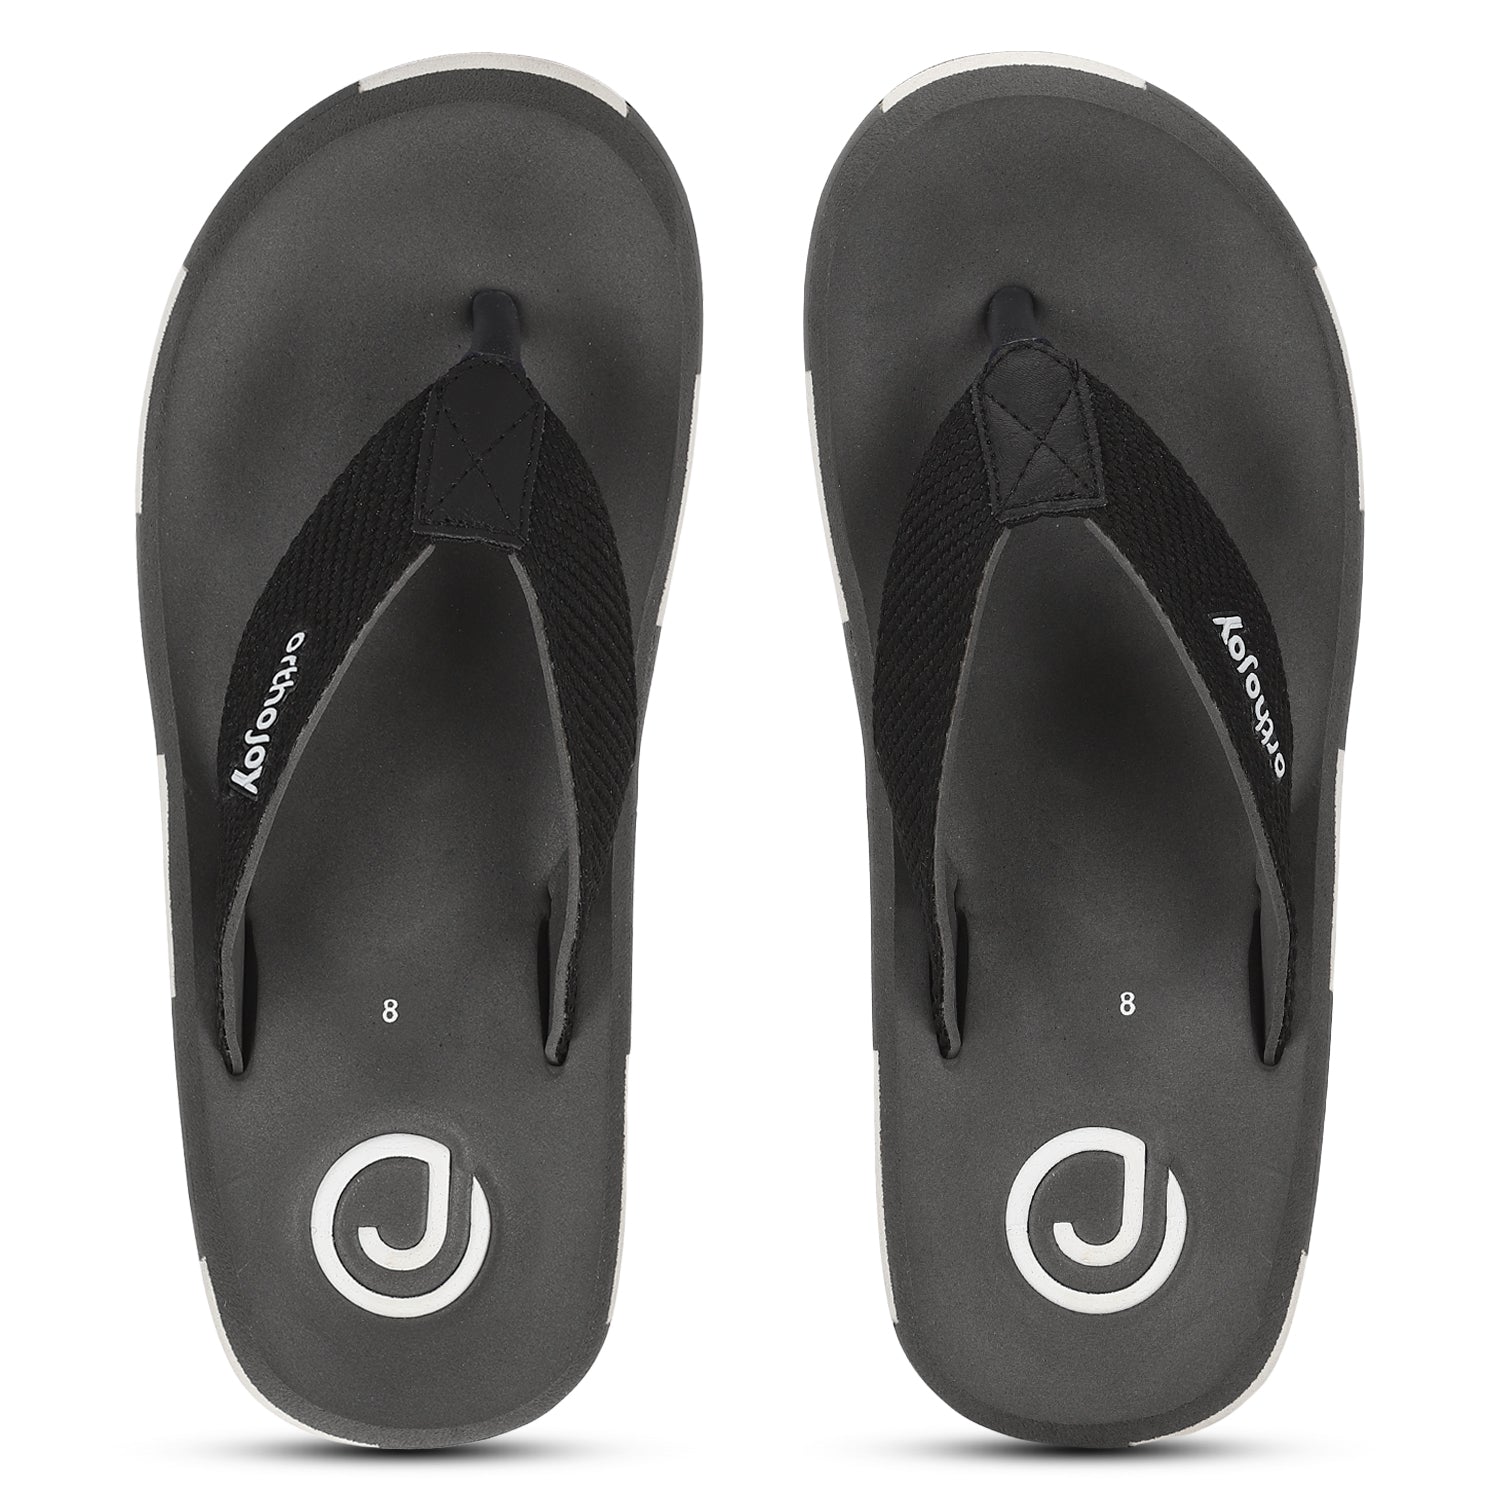 Ortho Slippers for men/Regular wear slipper